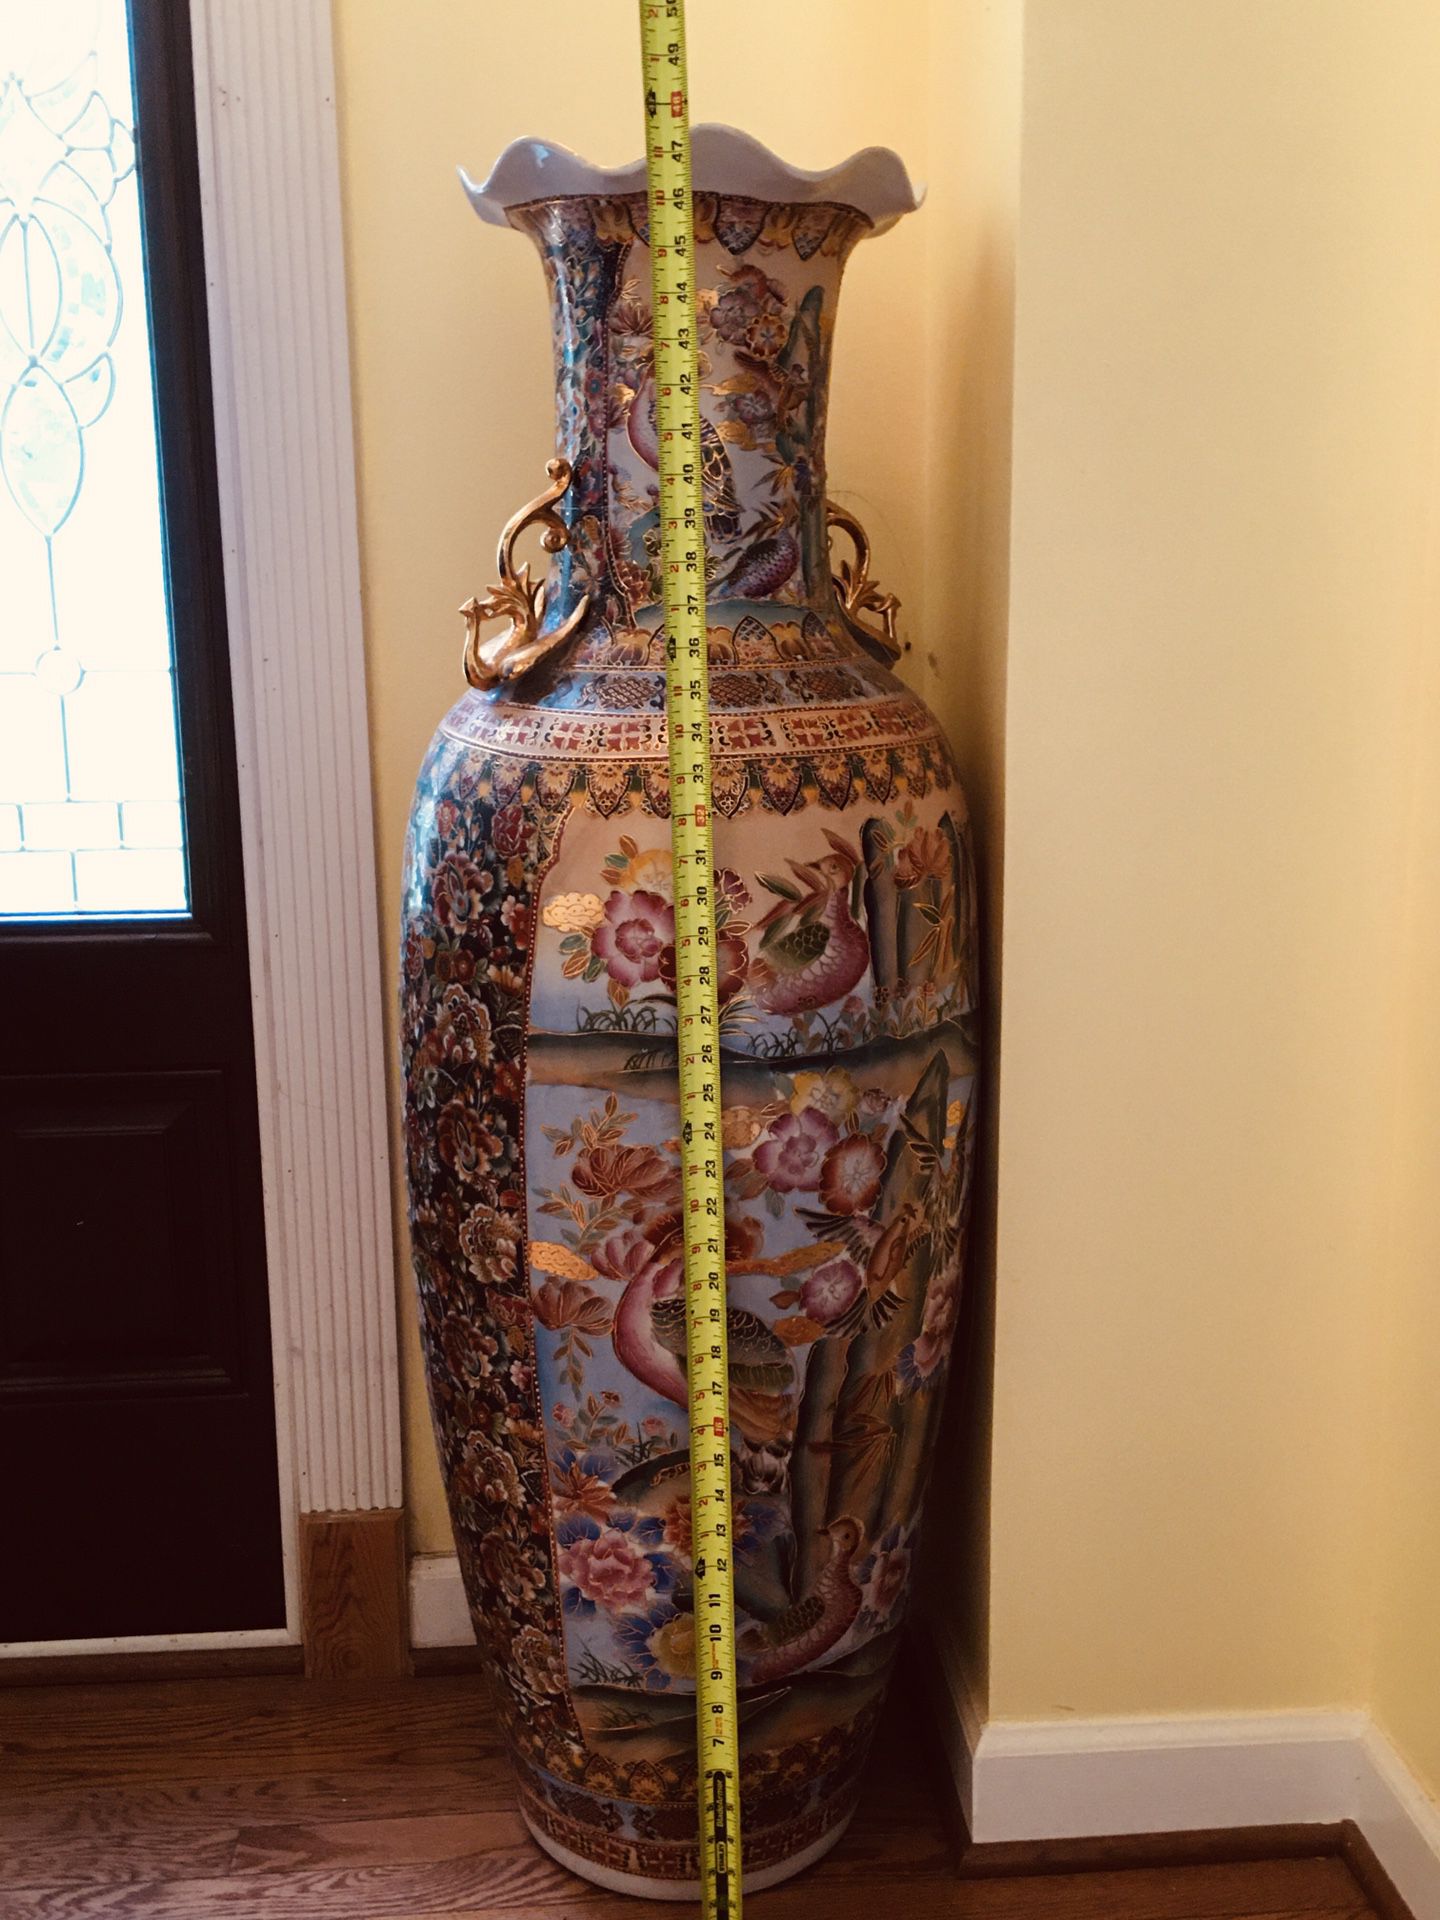 Large Traditional Porcelain Vase Chinese vase Antique Ceramic vase with Base Decorative Porcelain Vase Modern Home